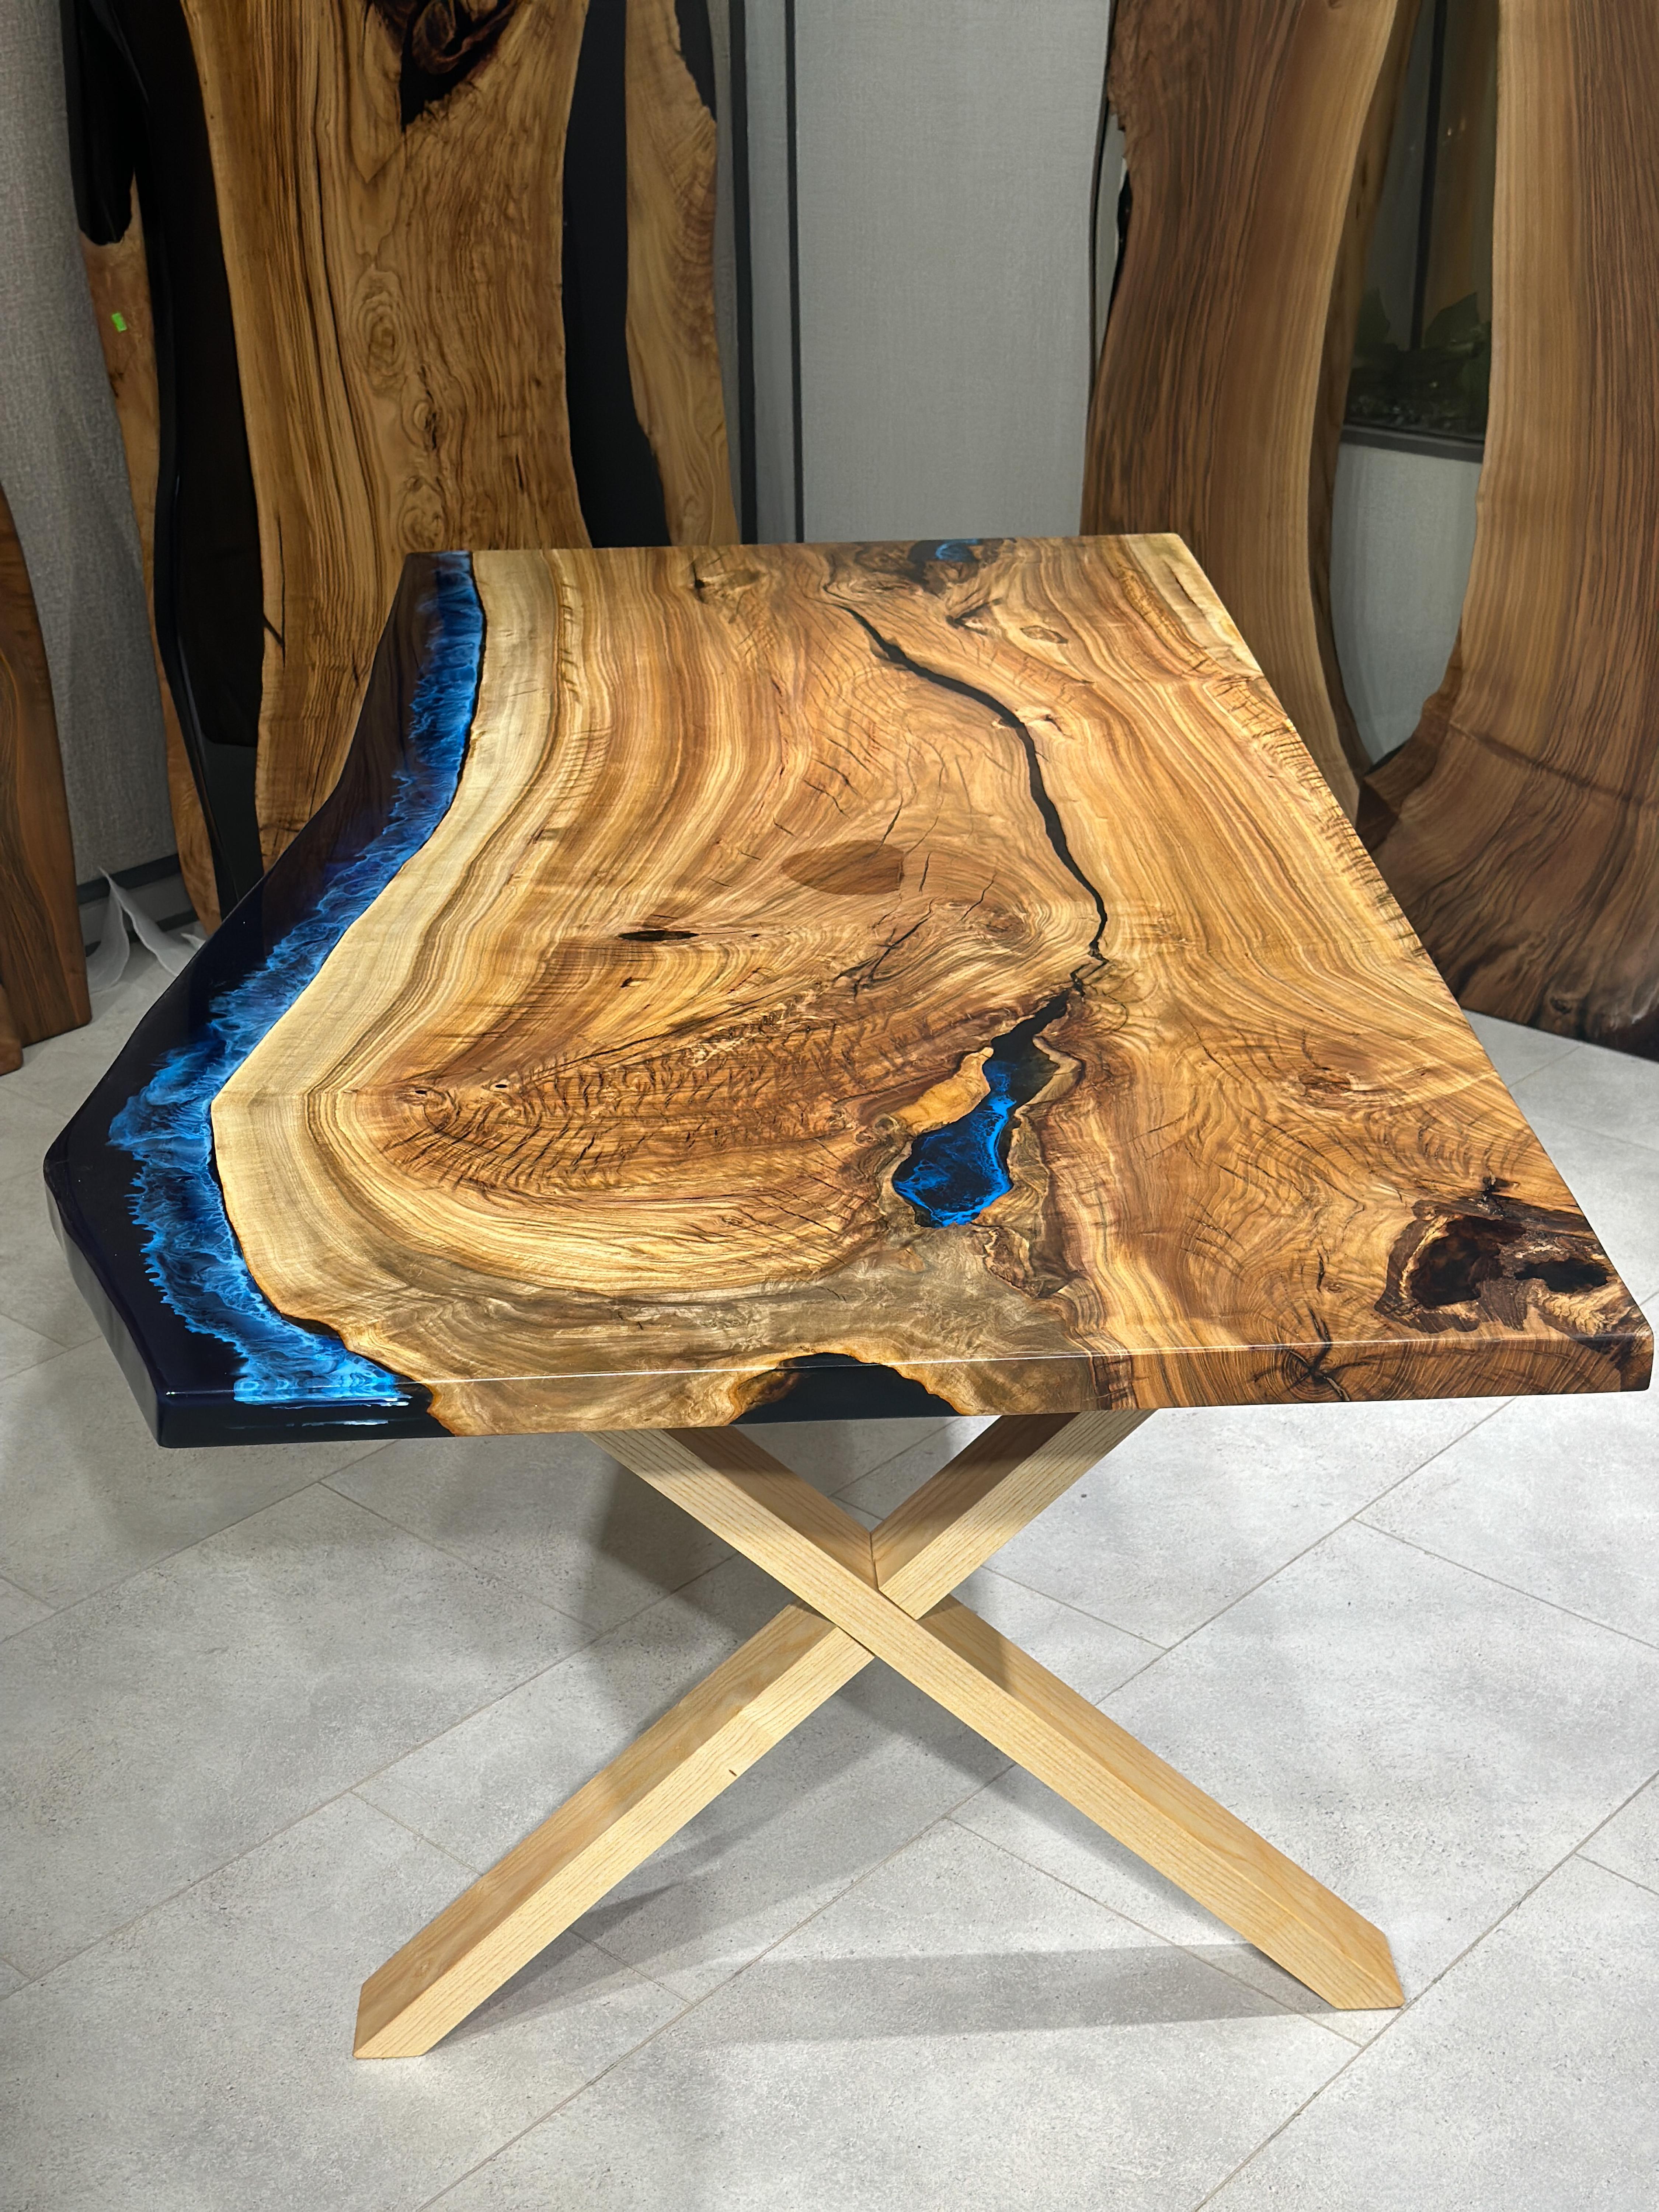 Individueller Gumwood Live Edge Epoxidharz-Esstisch 

Dieser Tisch ist aus Gumwood gefertigt. Die Maserung und die Struktur des Holzes beschreiben, wie ein natürliches Walnussholz aussieht.
Er kann als Esstisch oder als Konferenztisch verwendet